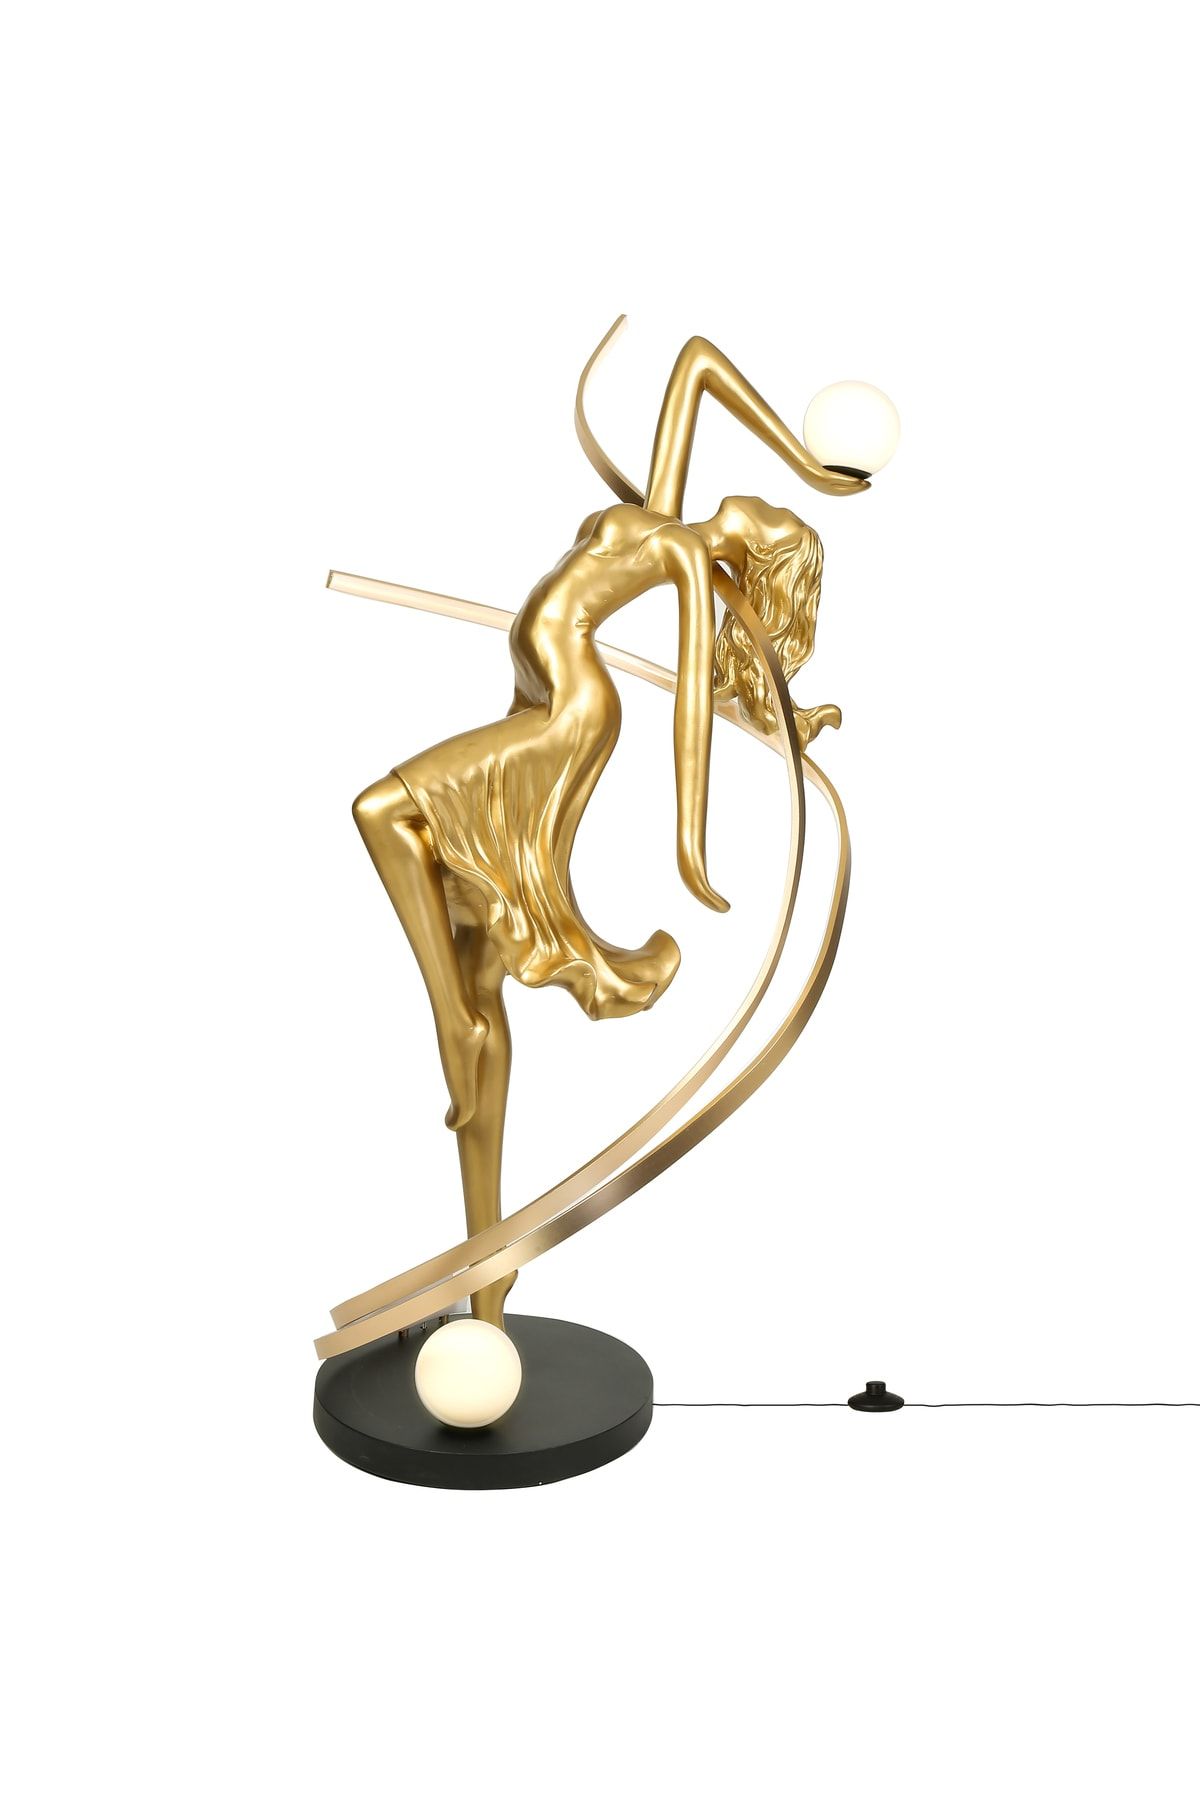 AsilAksesuar Gold Altın Kadın Heykel Ofis Mağaza Salon Ev Dekorasyon Obje Aksesuarı Ledli Lamba Işıklı Lambader